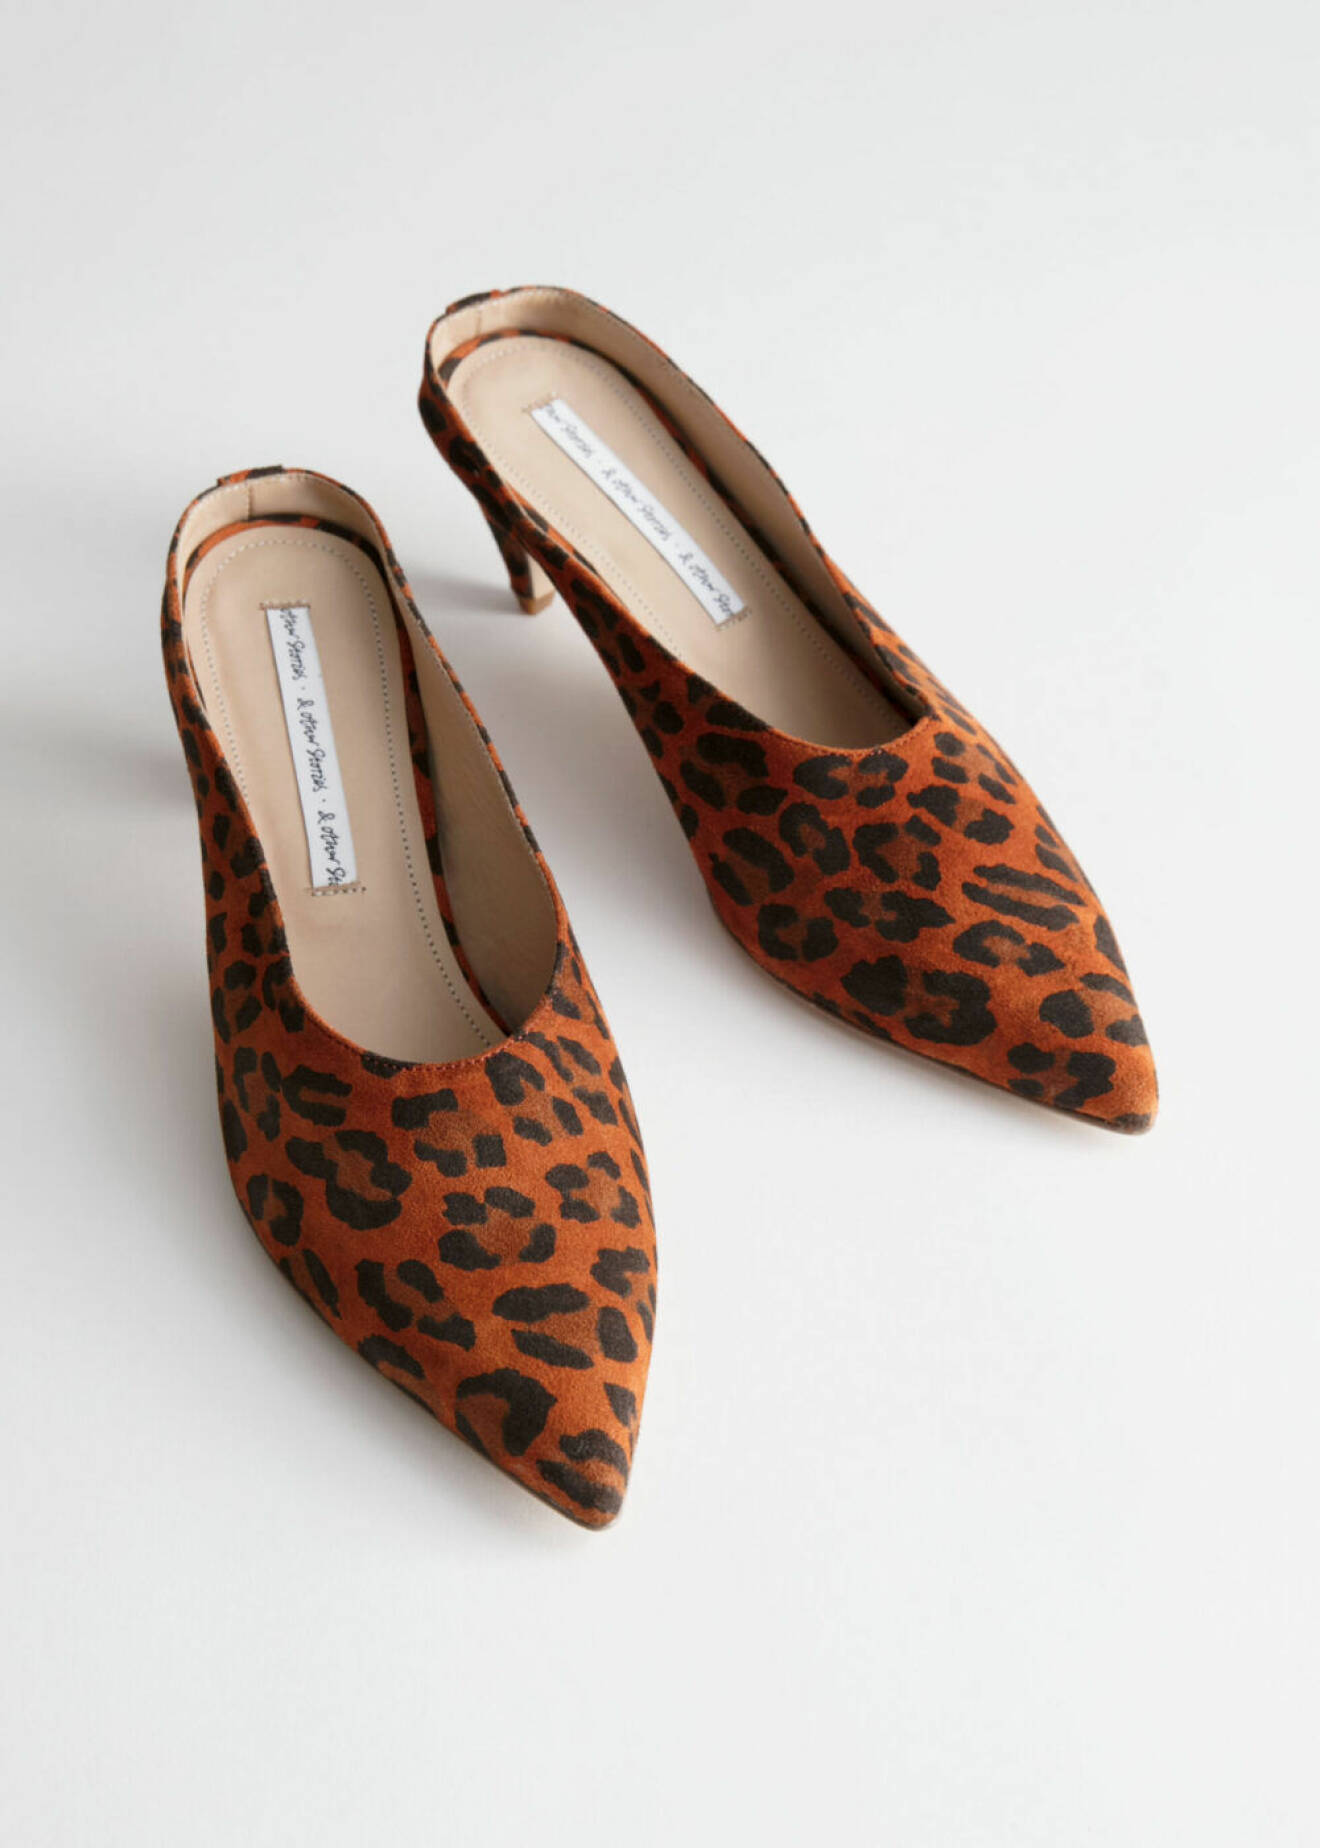 Snygga klackskor med leopard-mönster från & Other Stories. Här kan du shoppa skorna!